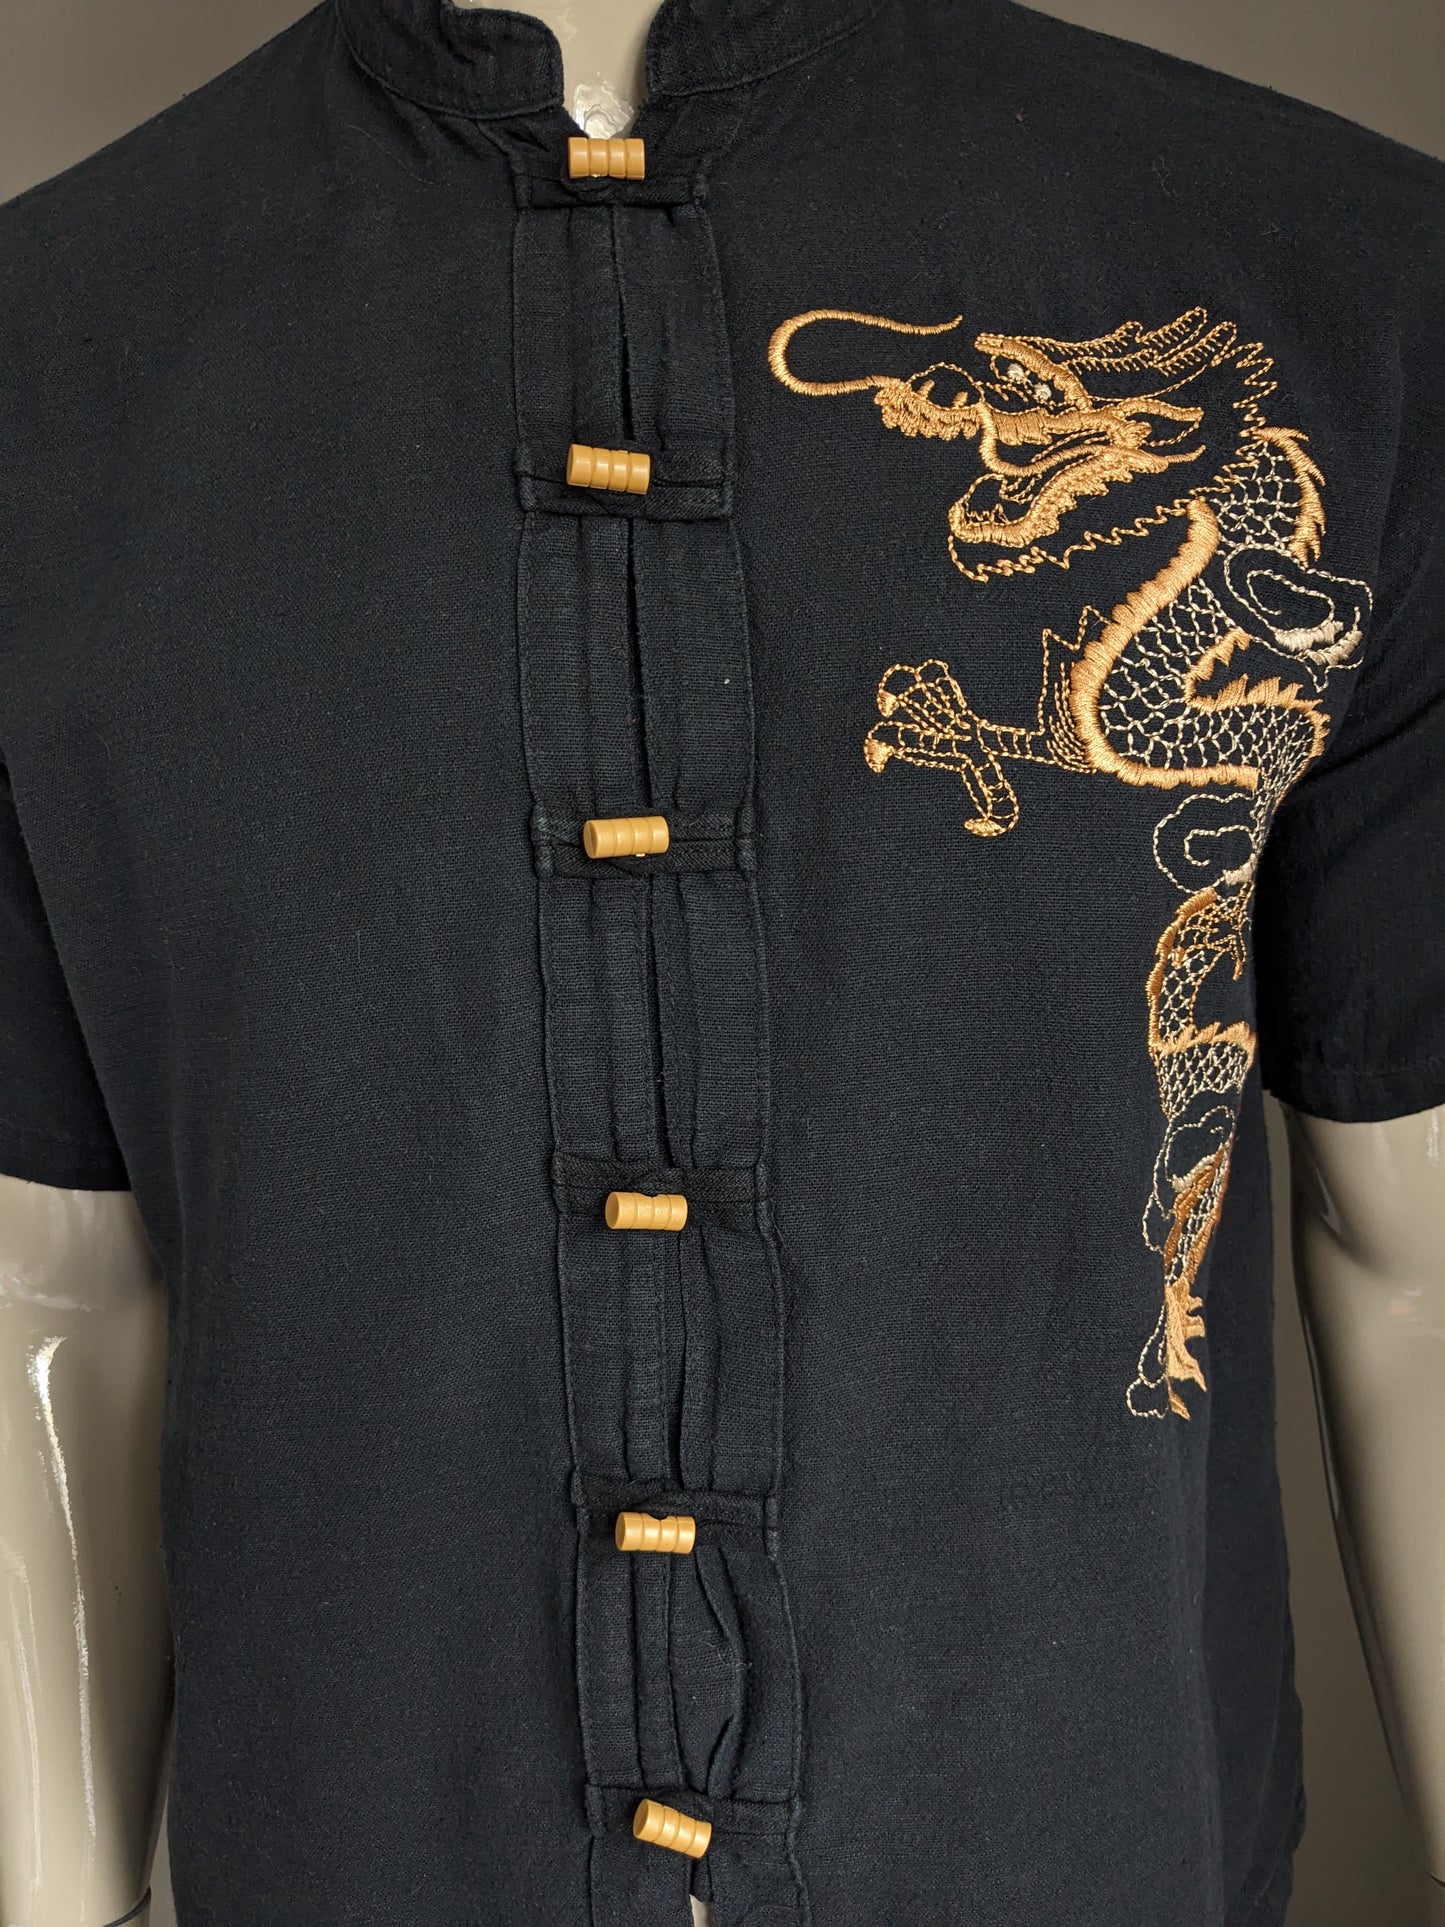 Sleeve corta con camicia Razia vintage con MAO / agricoltore / colletto rialzato. Nero con drago ricamato. Taglia L.